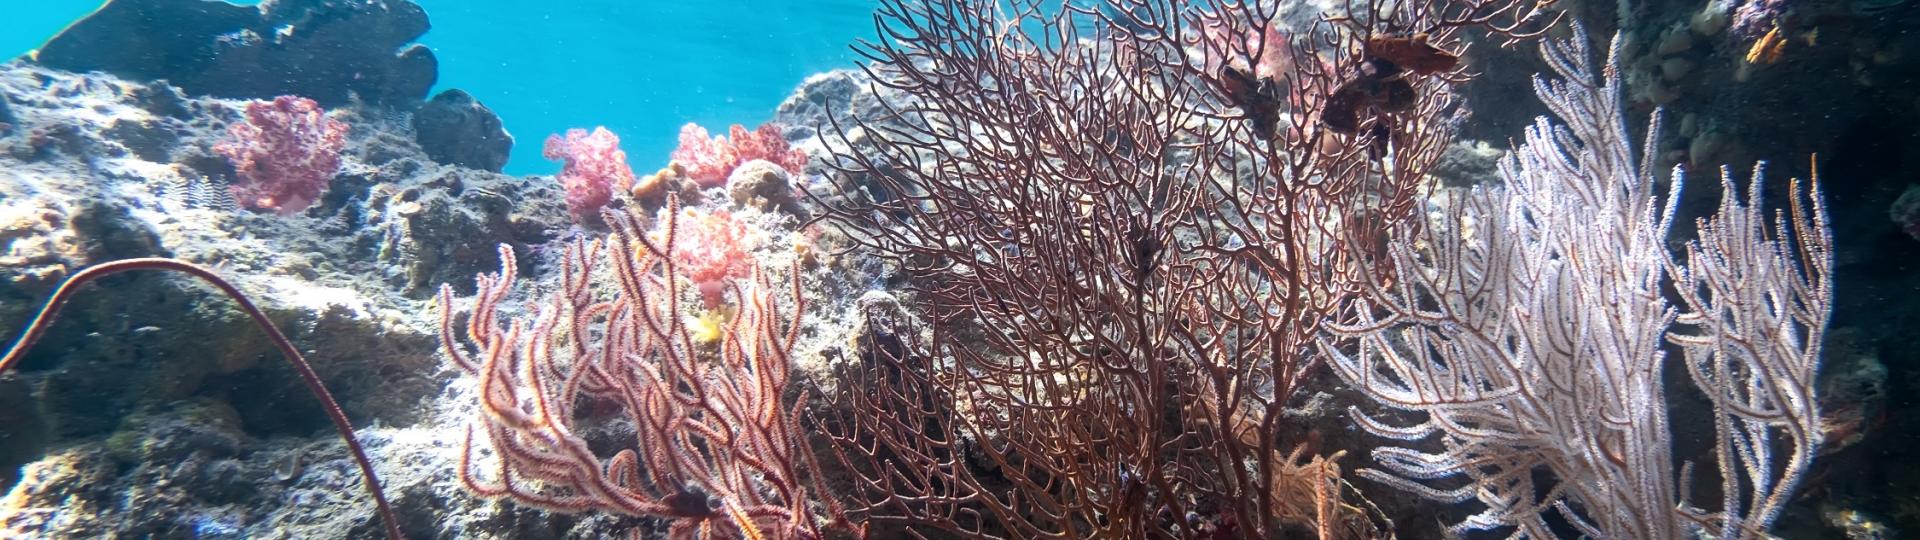 podwodne algi morskie, źródło: freepik